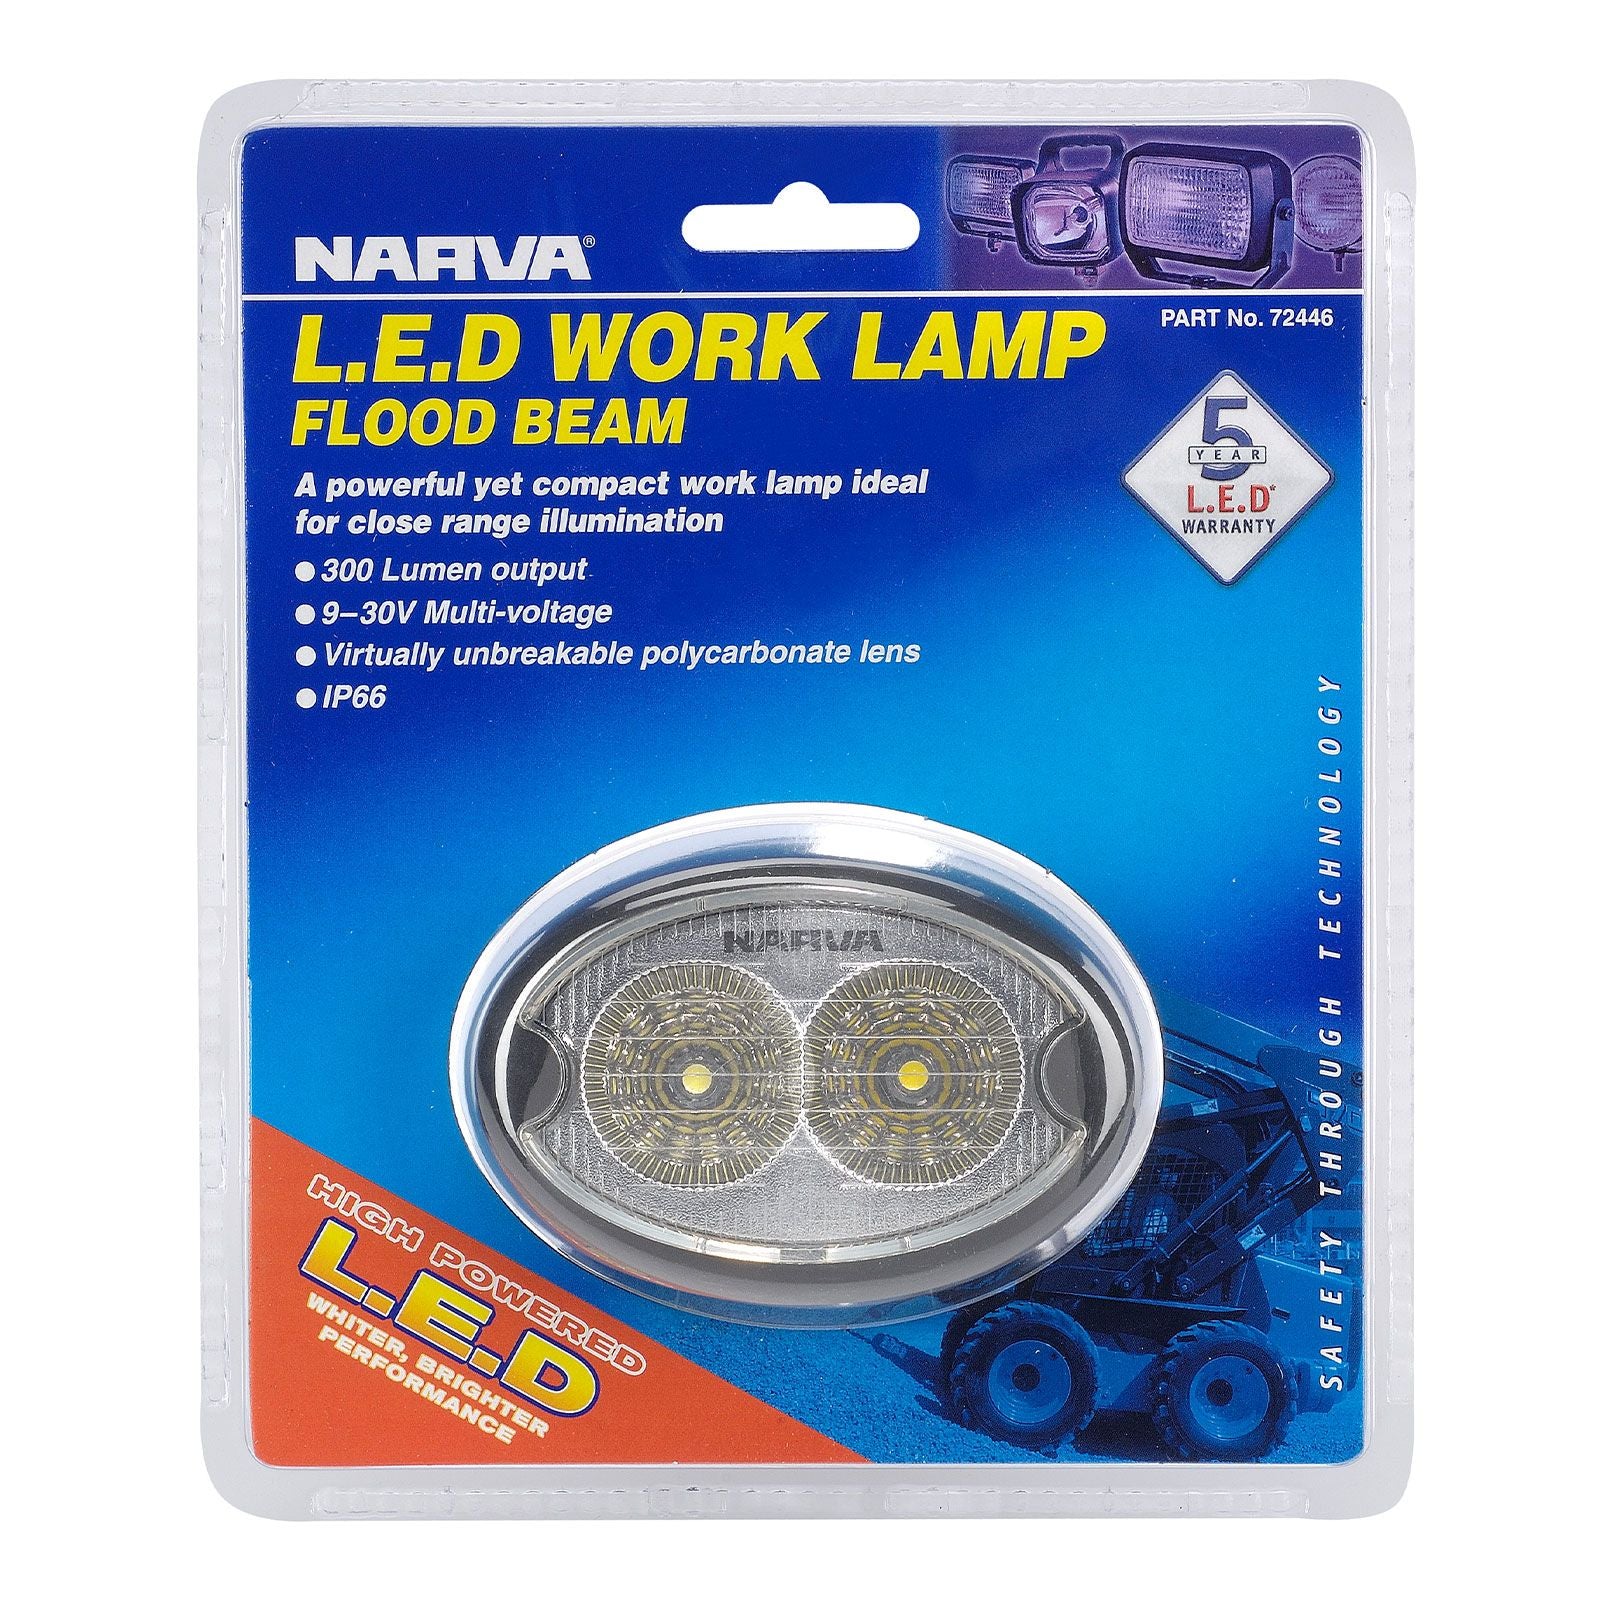 9-64V LED Work Lamp Flood Beam - 1000 lumens